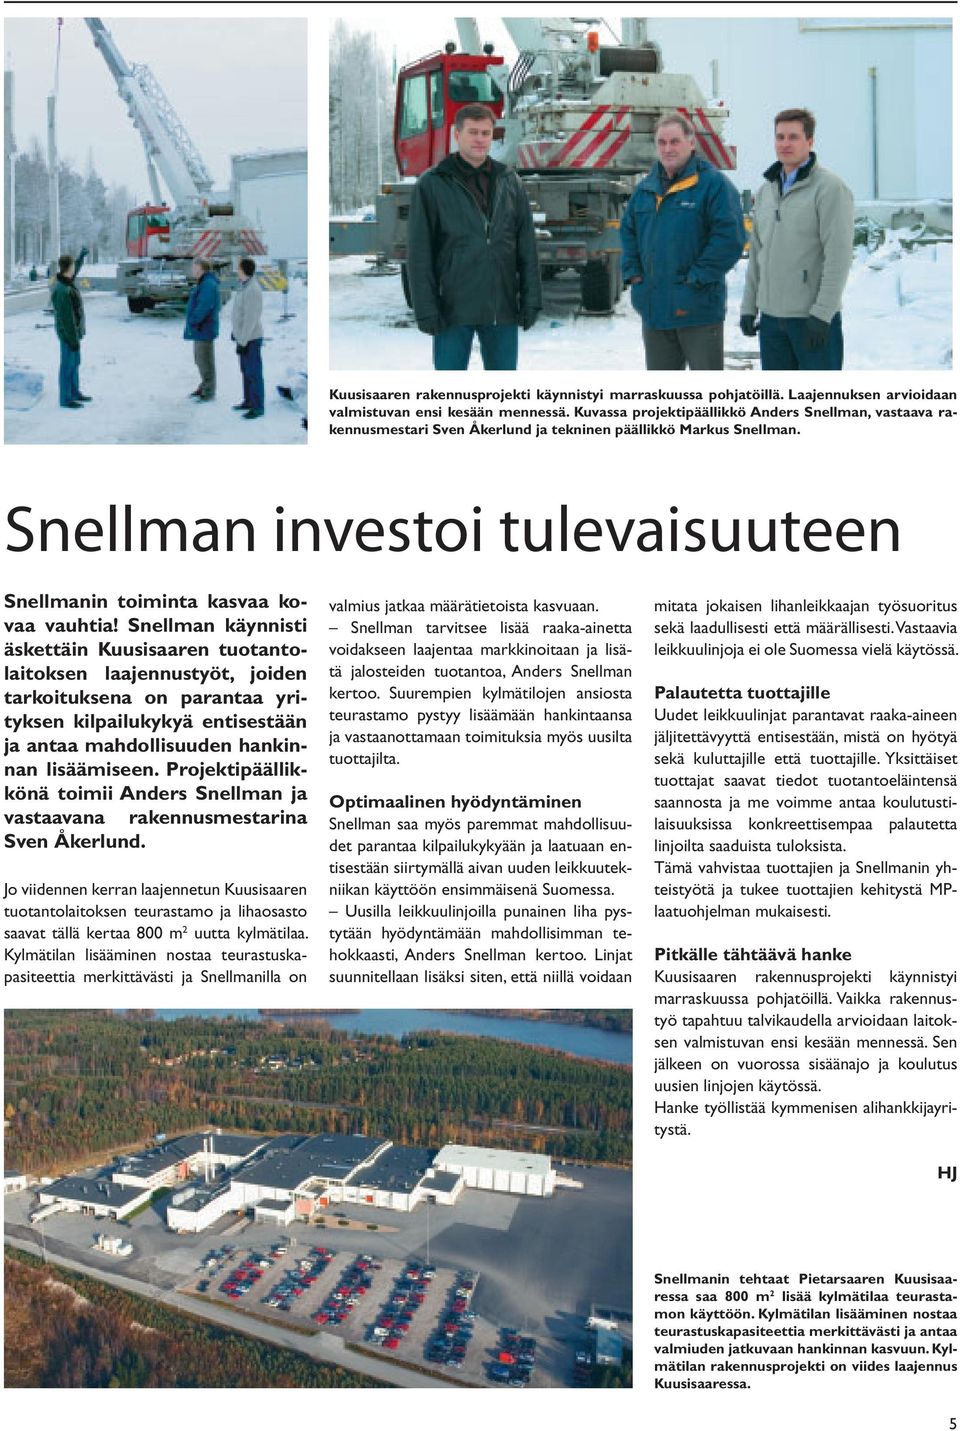 Snellman käynnisti äskettäin Kuusisaaren tuotantolaitoksen laajennustyöt, joiden tarkoituksena on parantaa yrityksen kilpailukykyä entisestään ja antaa mahdollisuuden hankinnan lisäämiseen.